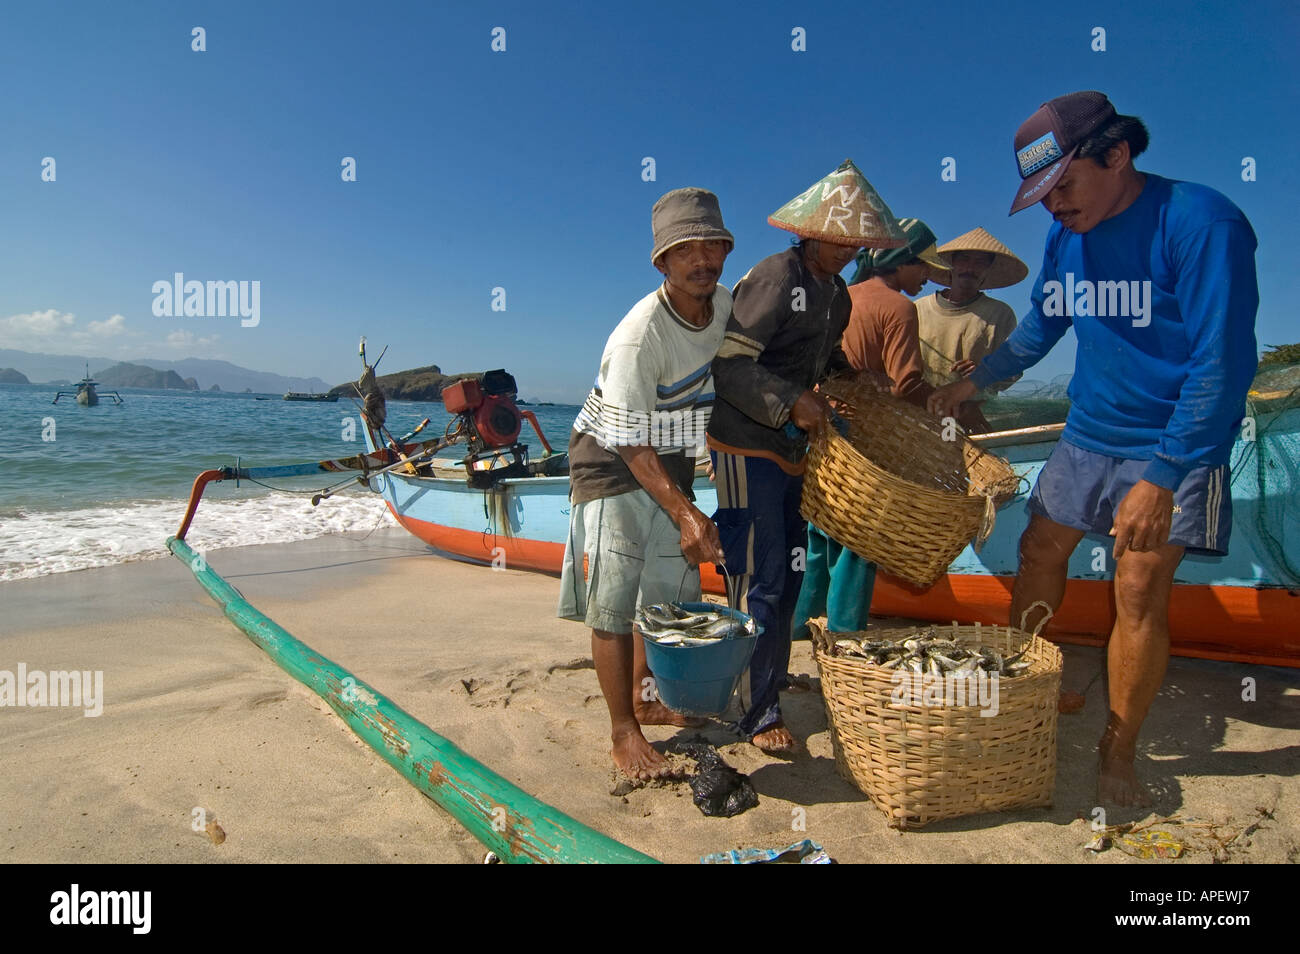 Indonesische Fischer in der Nähe von ihrem Boot und Fischernetze, an einem Strand im östlichen Teil der Insel Java, Indonesien. Stockfoto